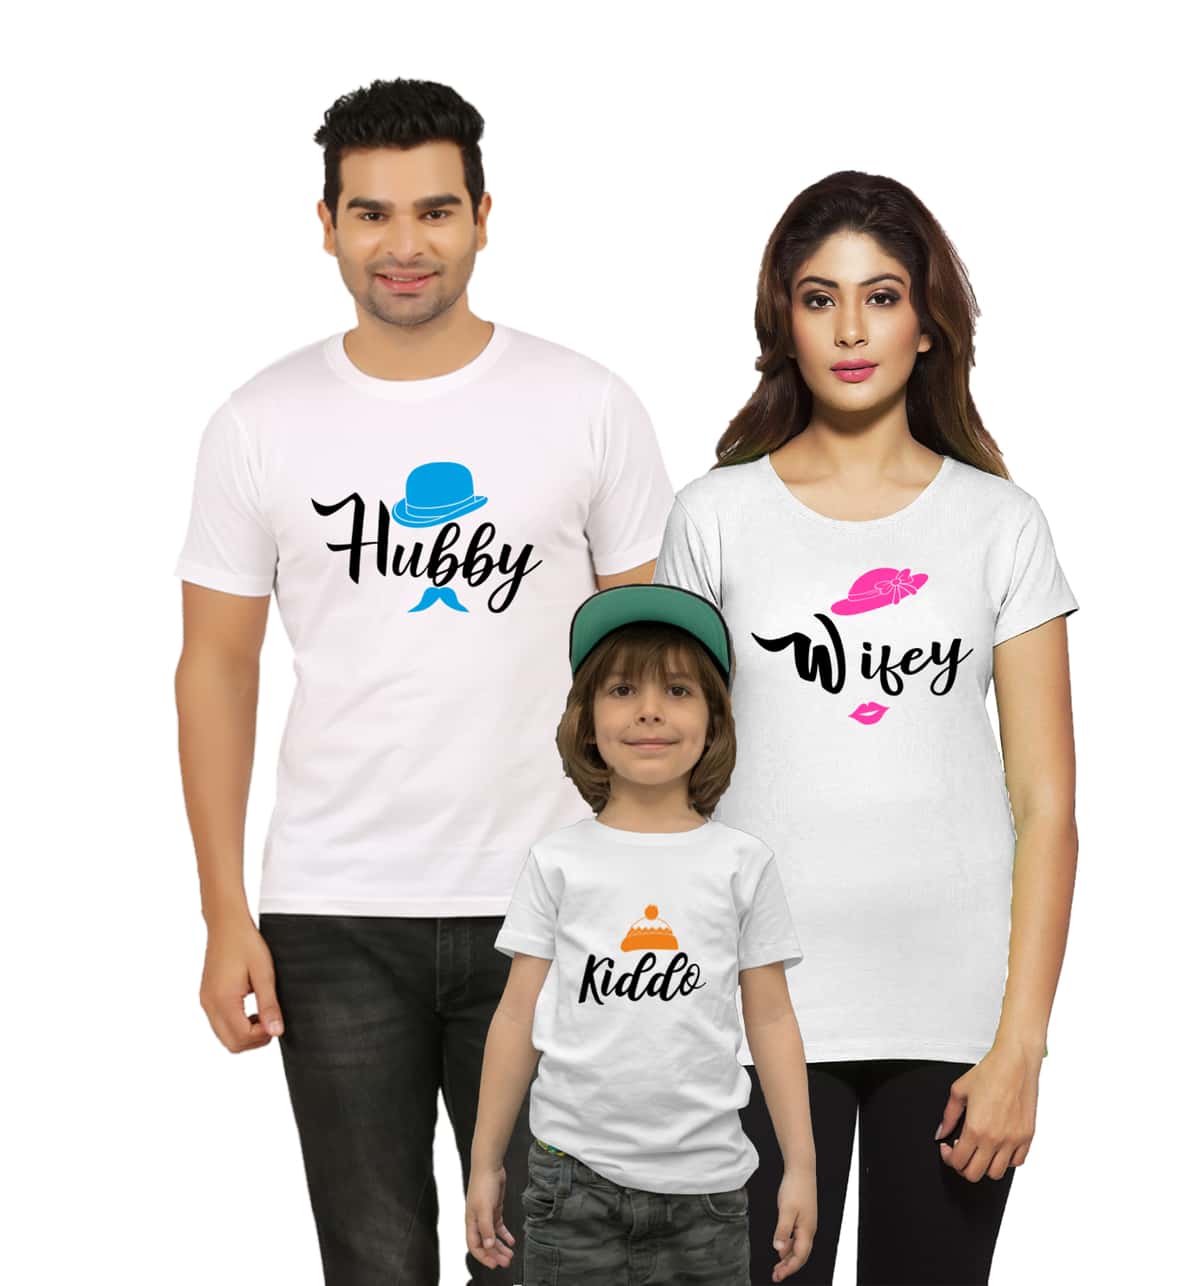 Hubby Wifey Kidoo Family Matching T-Shirts white